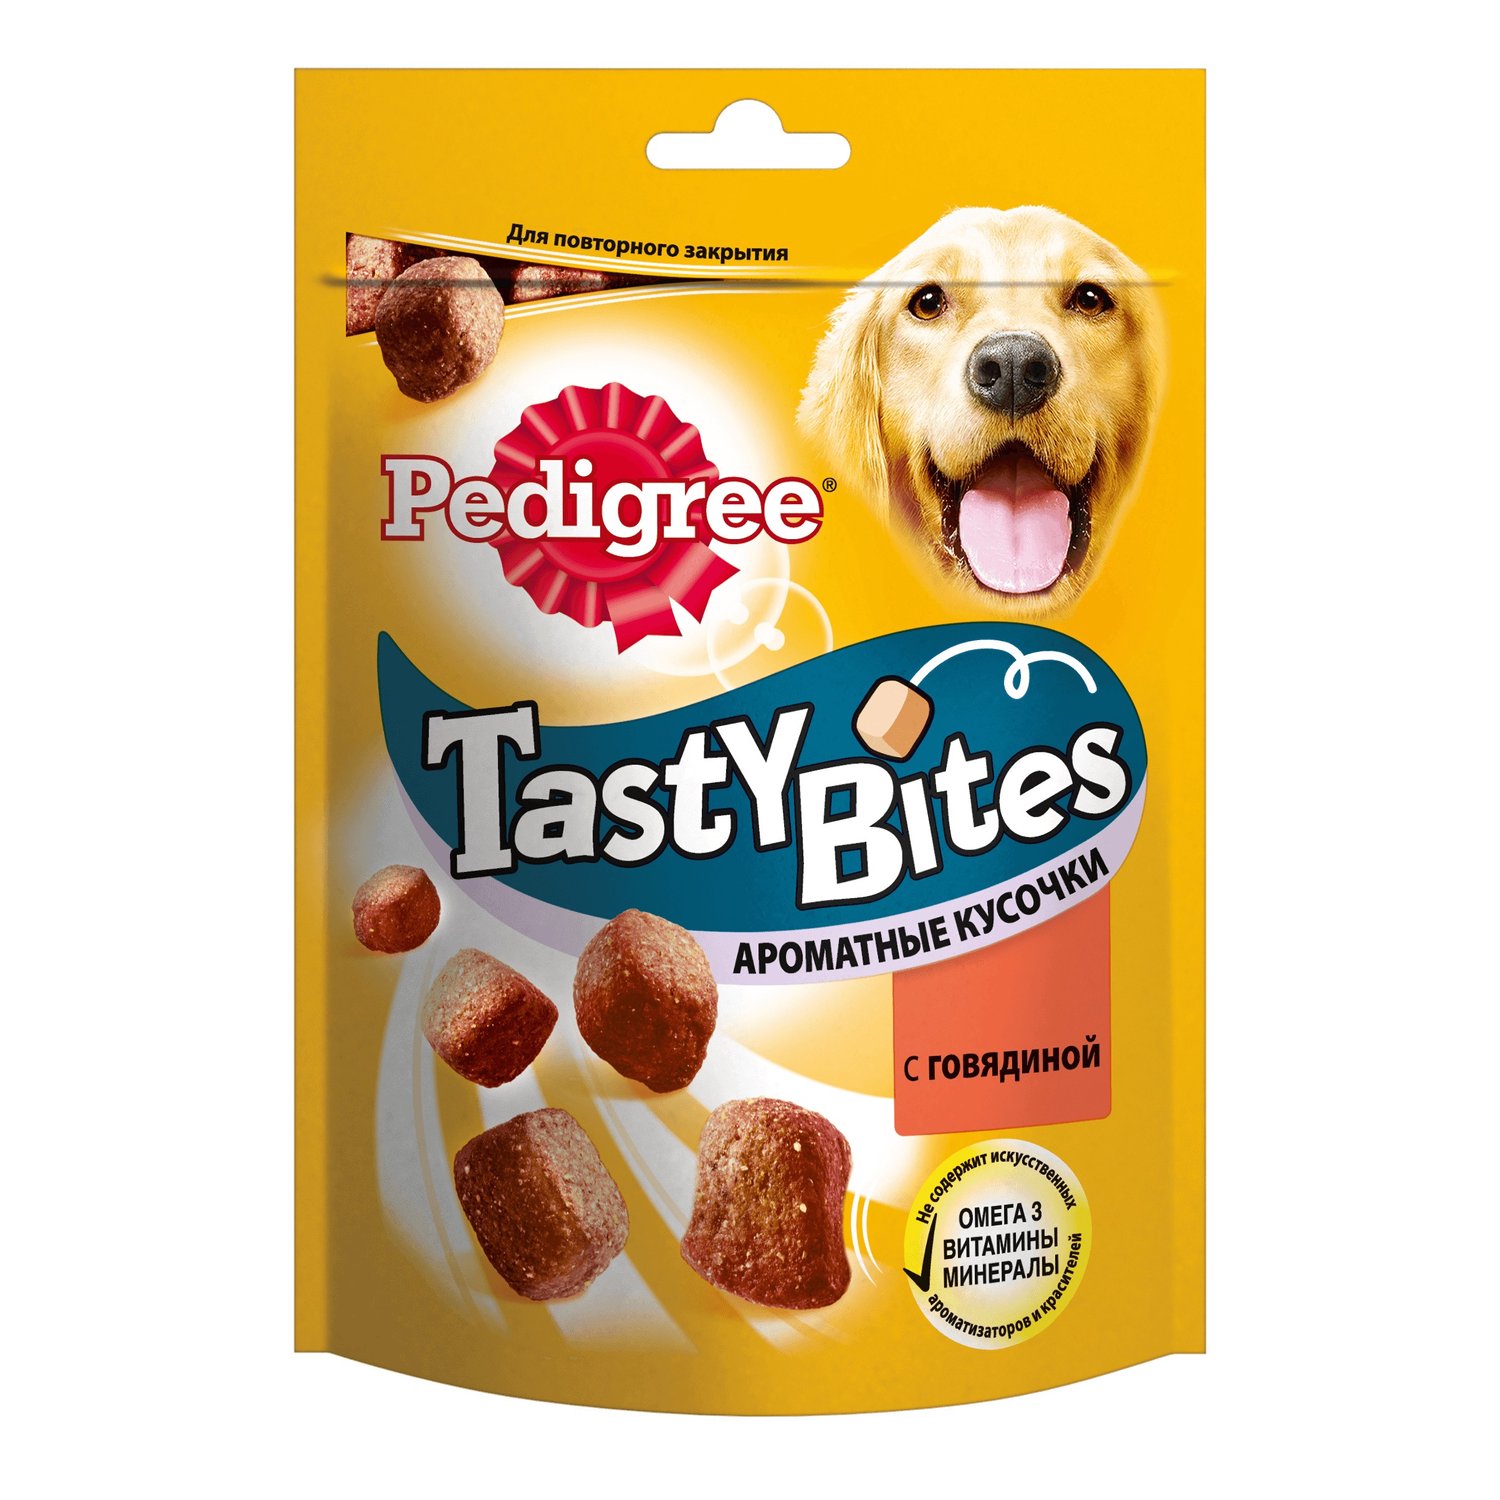 PEDIGREE TASTY BITES лакомство для собак – ароматные кусочки с говядиной